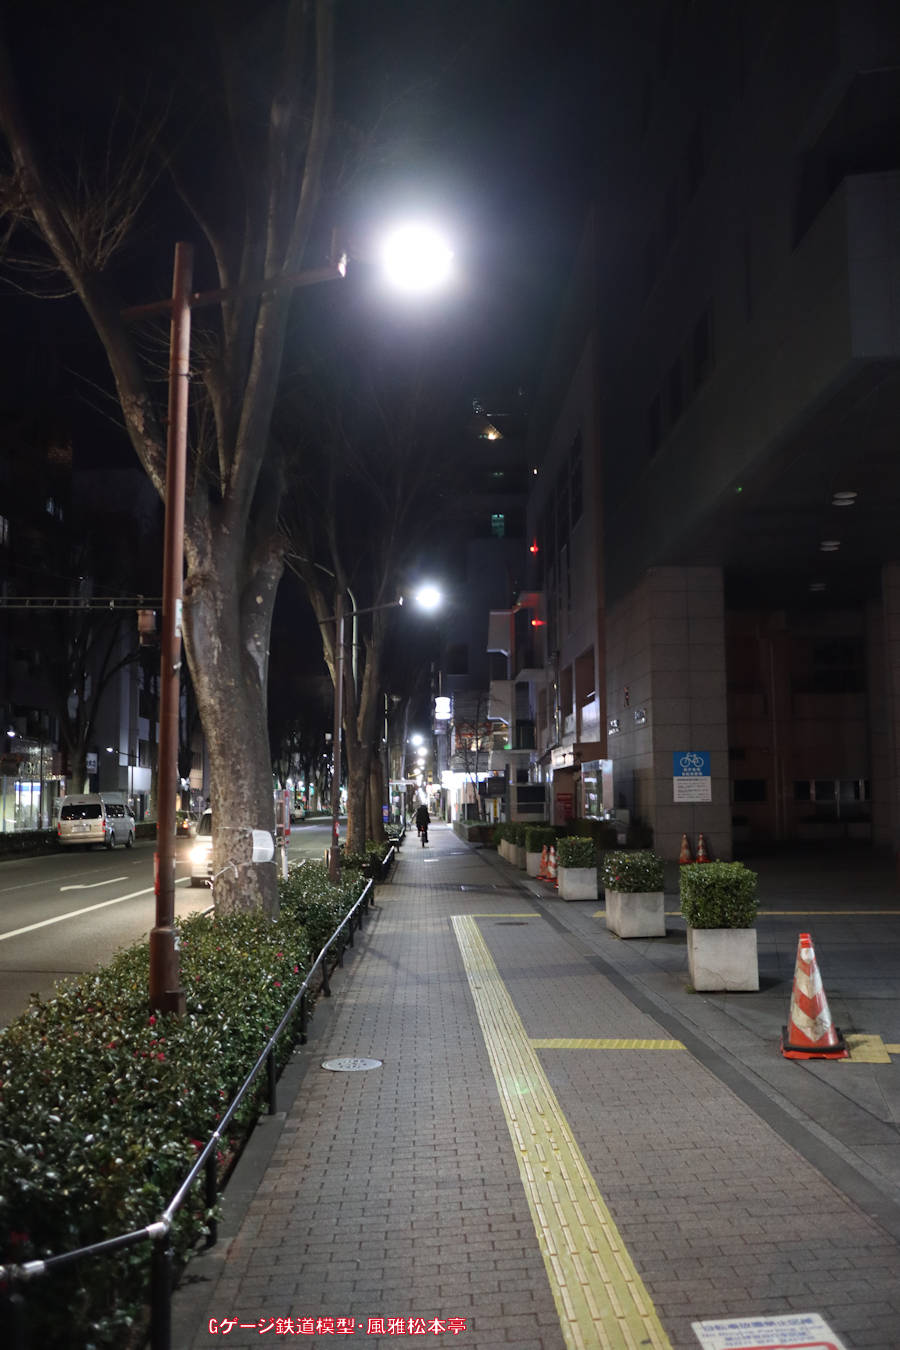 キヤノン製広角単焦点レンズ「EF-M22mm f2 STN」での撮影例、2022年(令和4年)1月、東京メトロ丸ノ内線南阿佐ヶ谷(みなみあさがや：東京都杉並区)駅付近にて撮影。